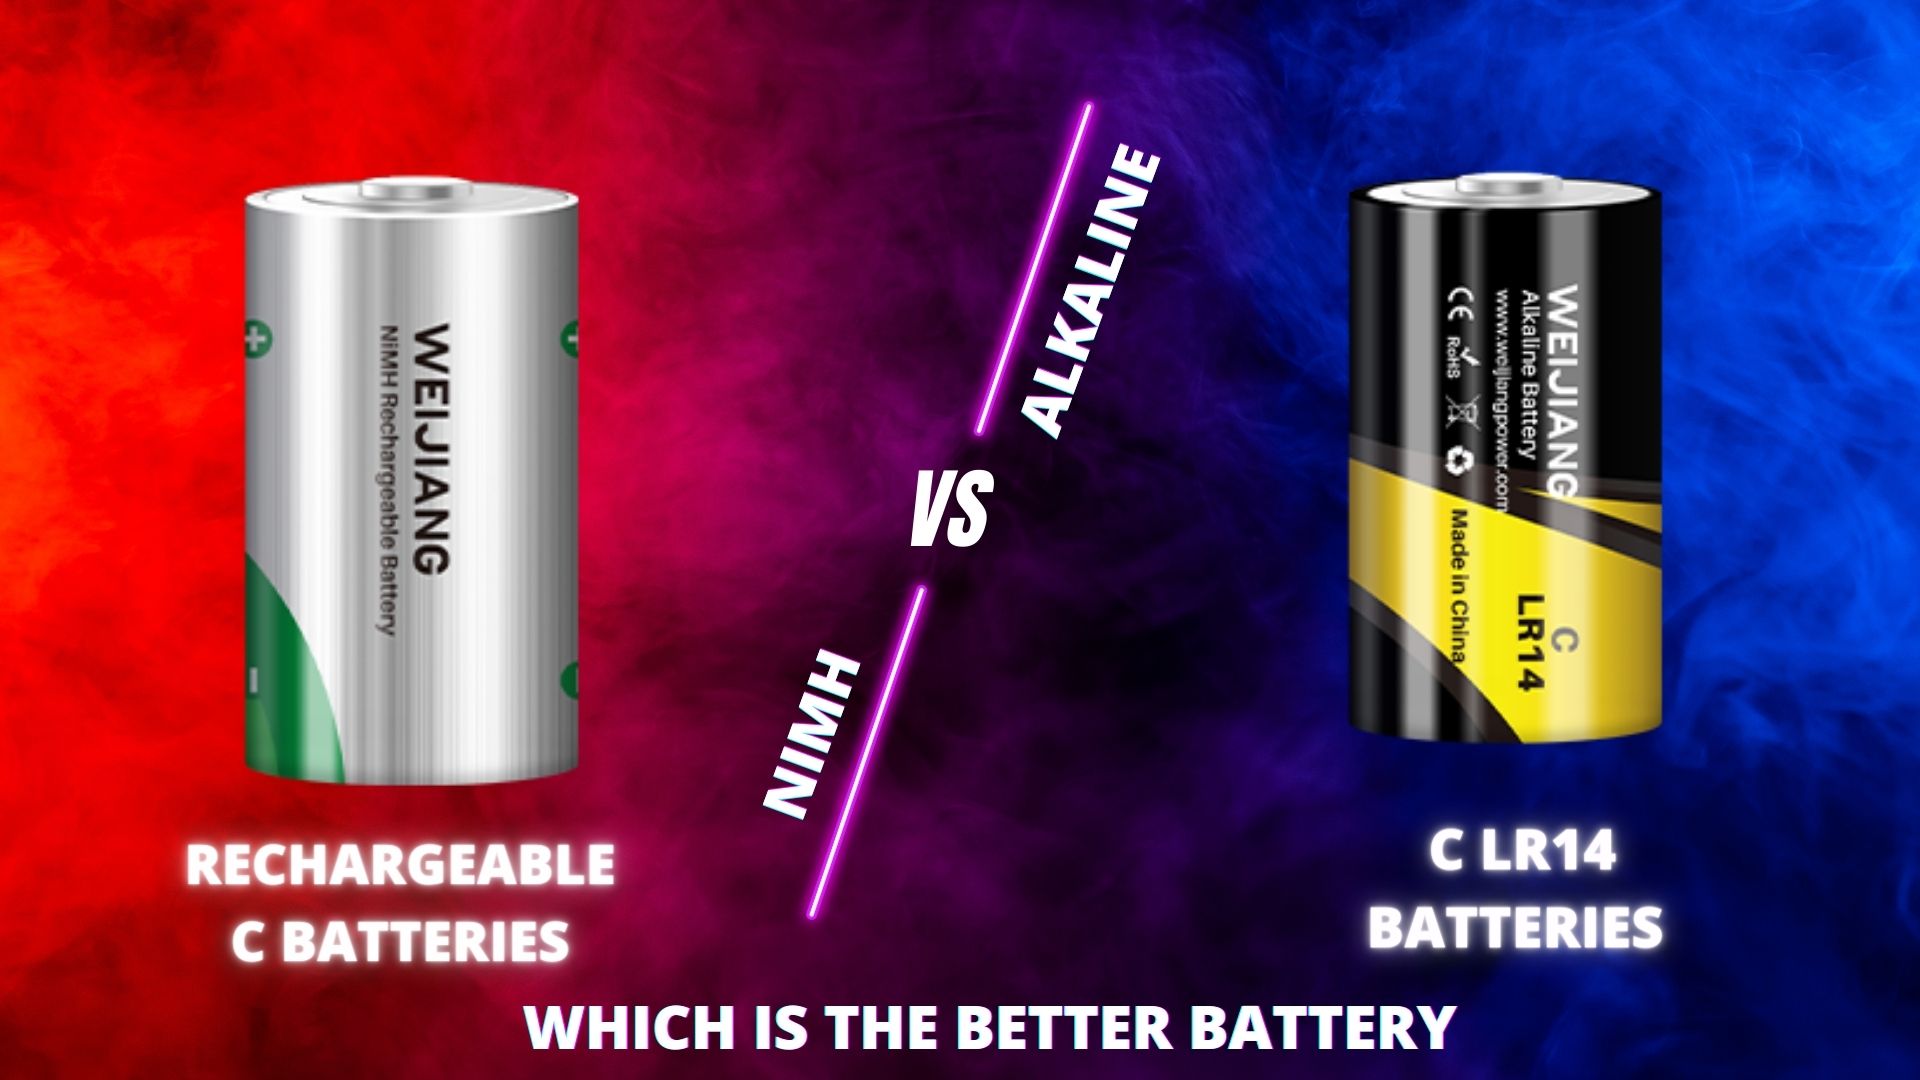 ریچارج ایبل C بیٹریاں بمقابلہ الکلین C LR14 بیٹریاں: آپ کے کاروبار کے لیے بہترین C بیٹری کون سی ہے؟|ویجیانگ